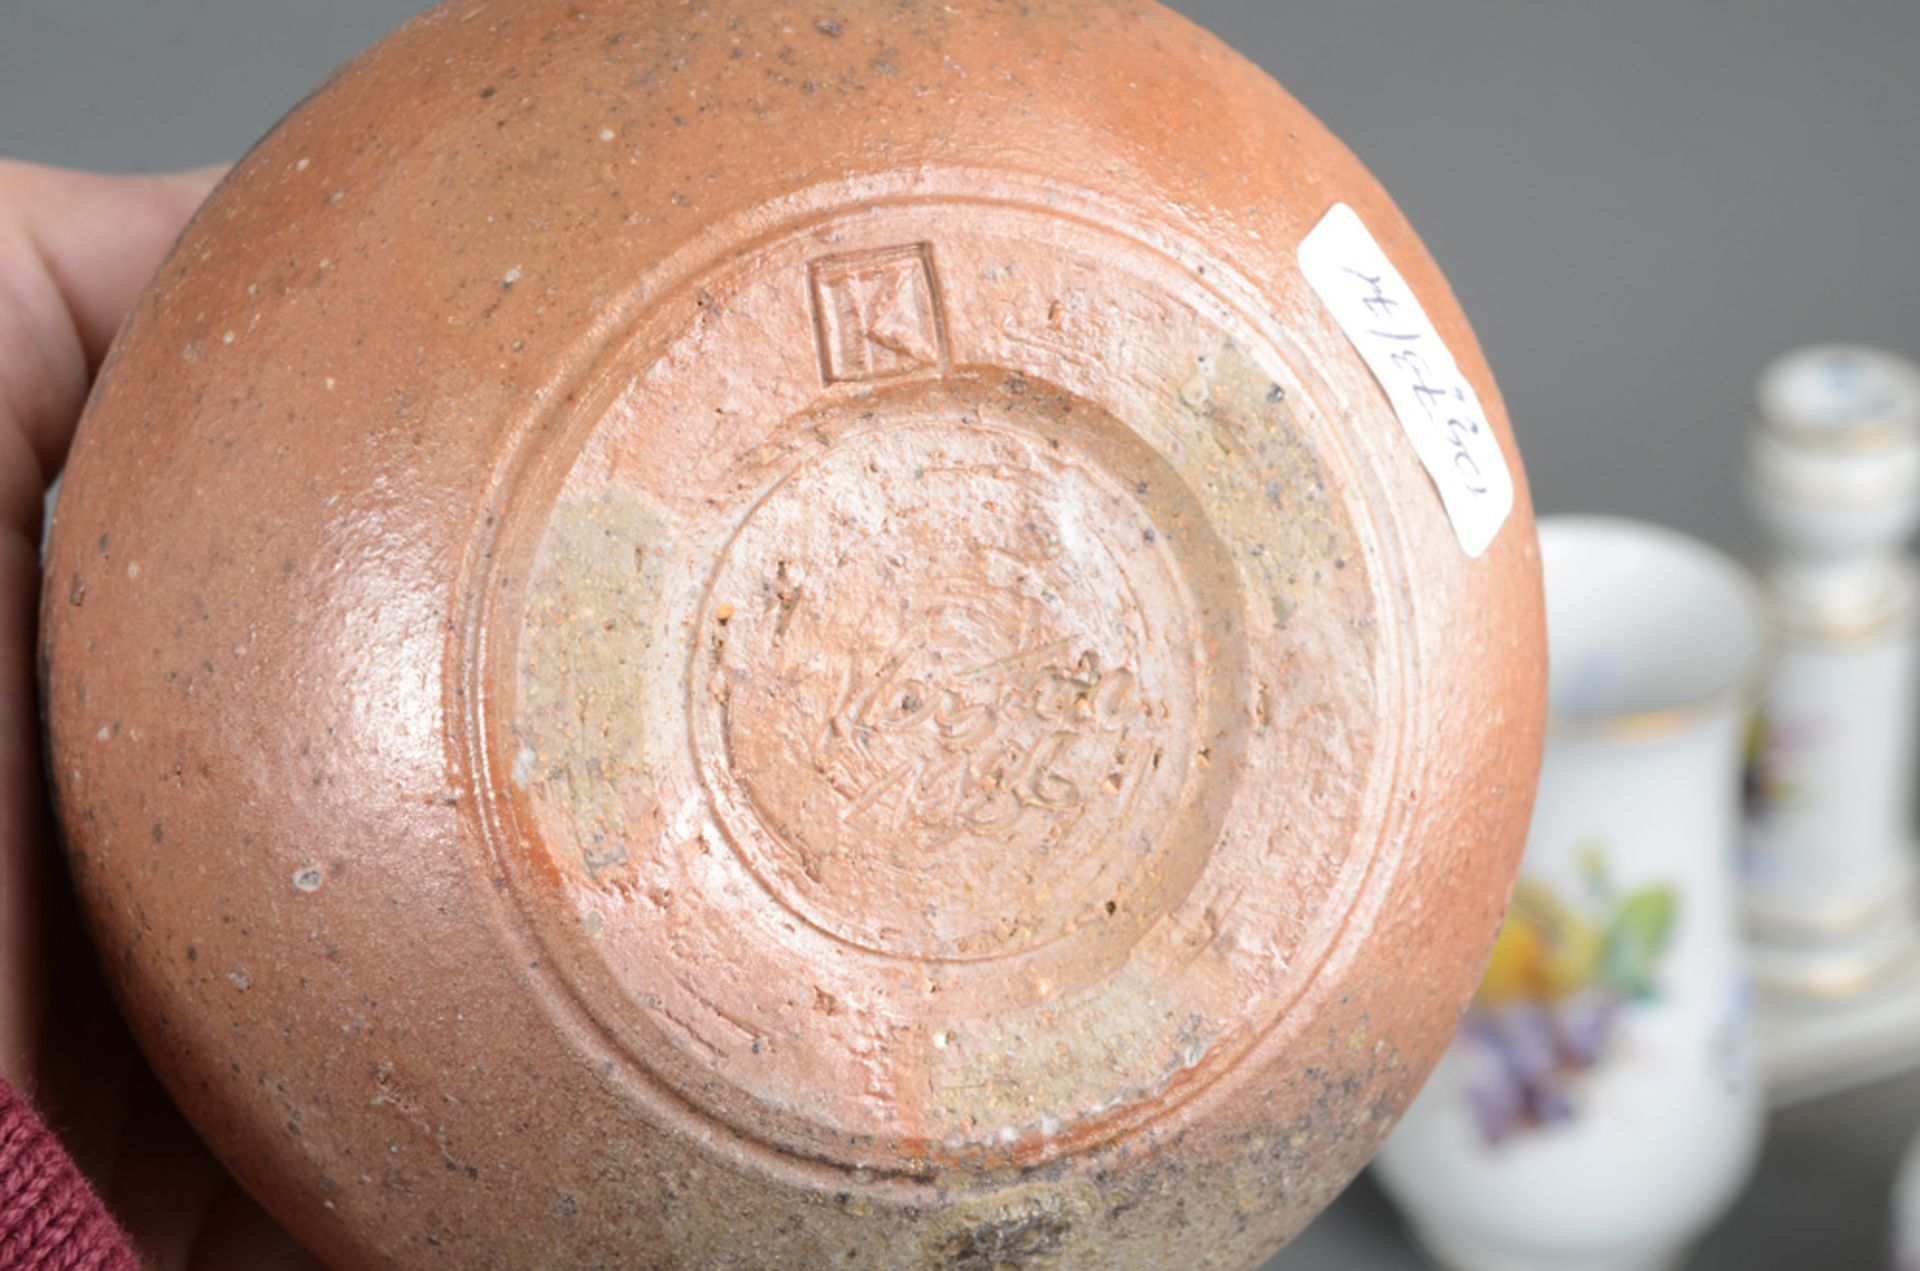 Birnförmige Vase. Kandern, Horst Kerstan (1941-2005) dat. 1986. Keramik, aufwendig geformt und glasi - Bild 2 aus 2